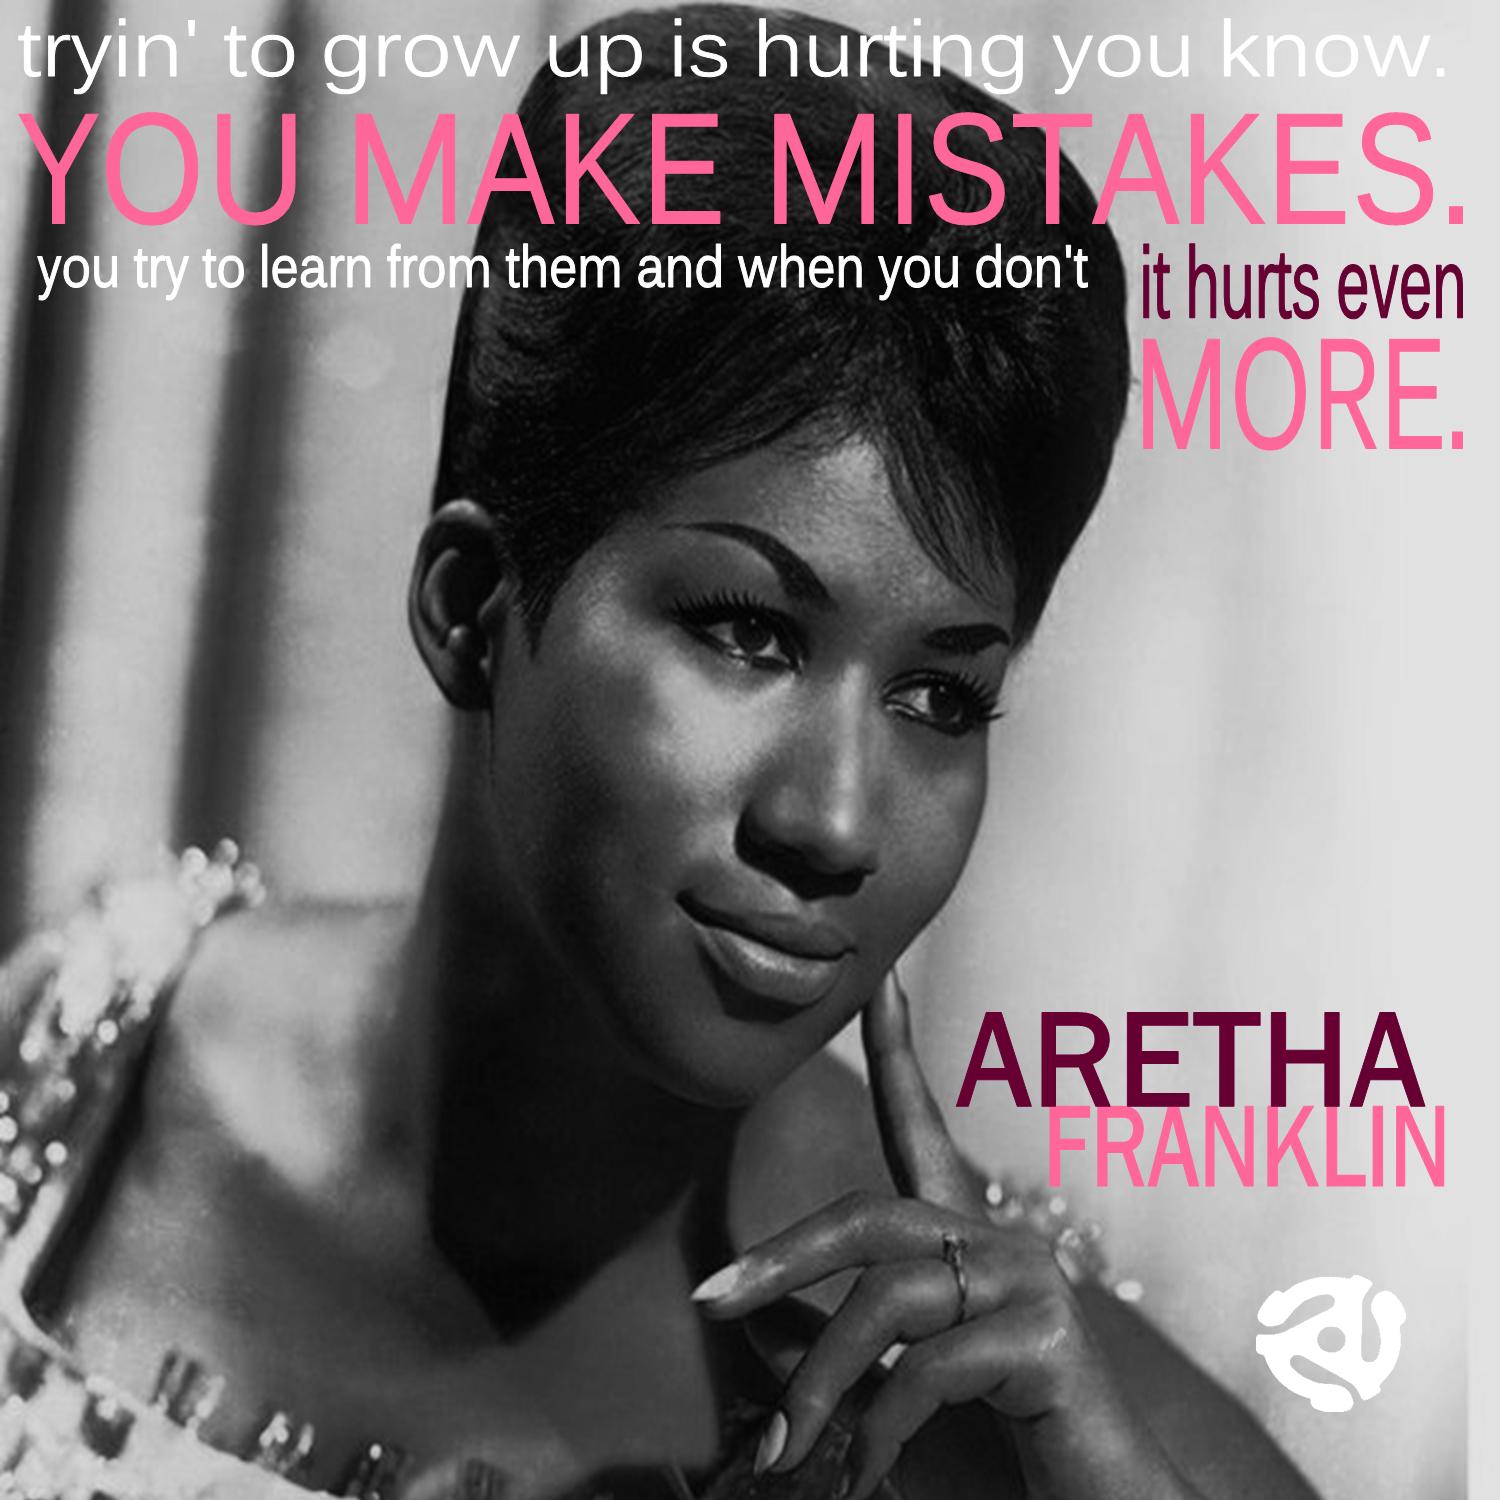 Aretha Franklin quote #2